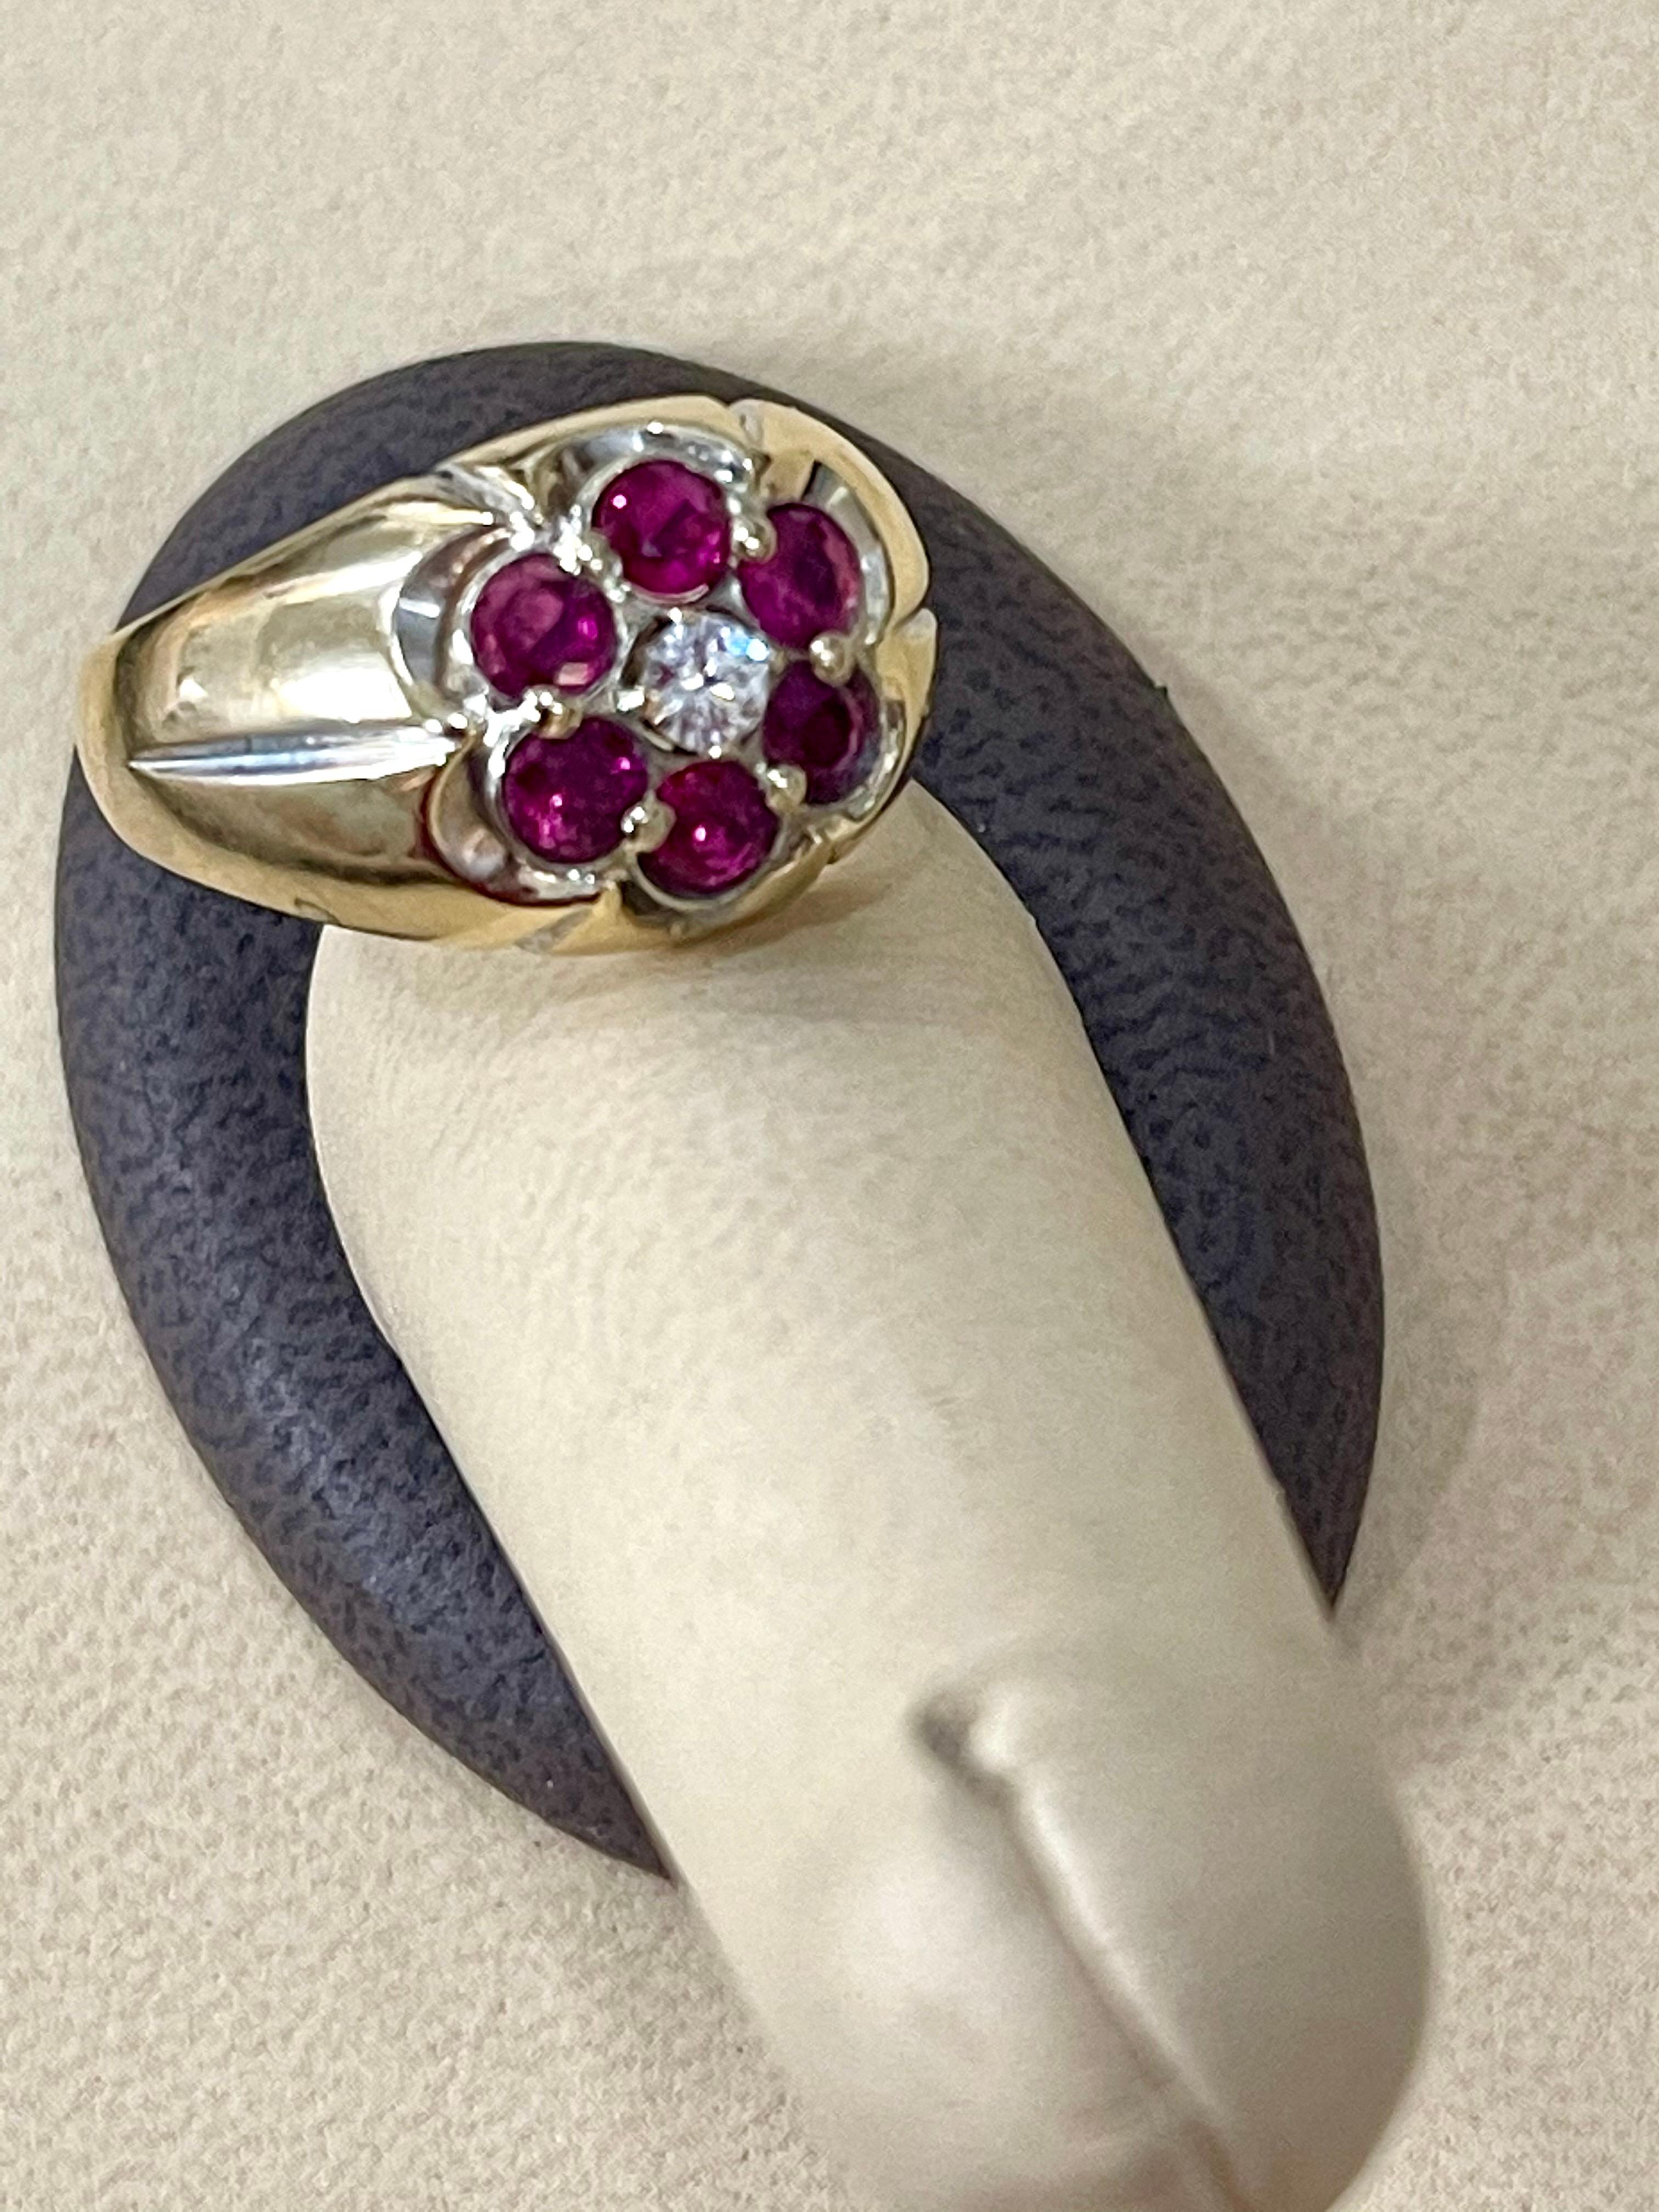 1.0 Carat, 7 Stone Ruby & Diamond Traditional Men's Ring 14 Karat Y Gold Ring 2